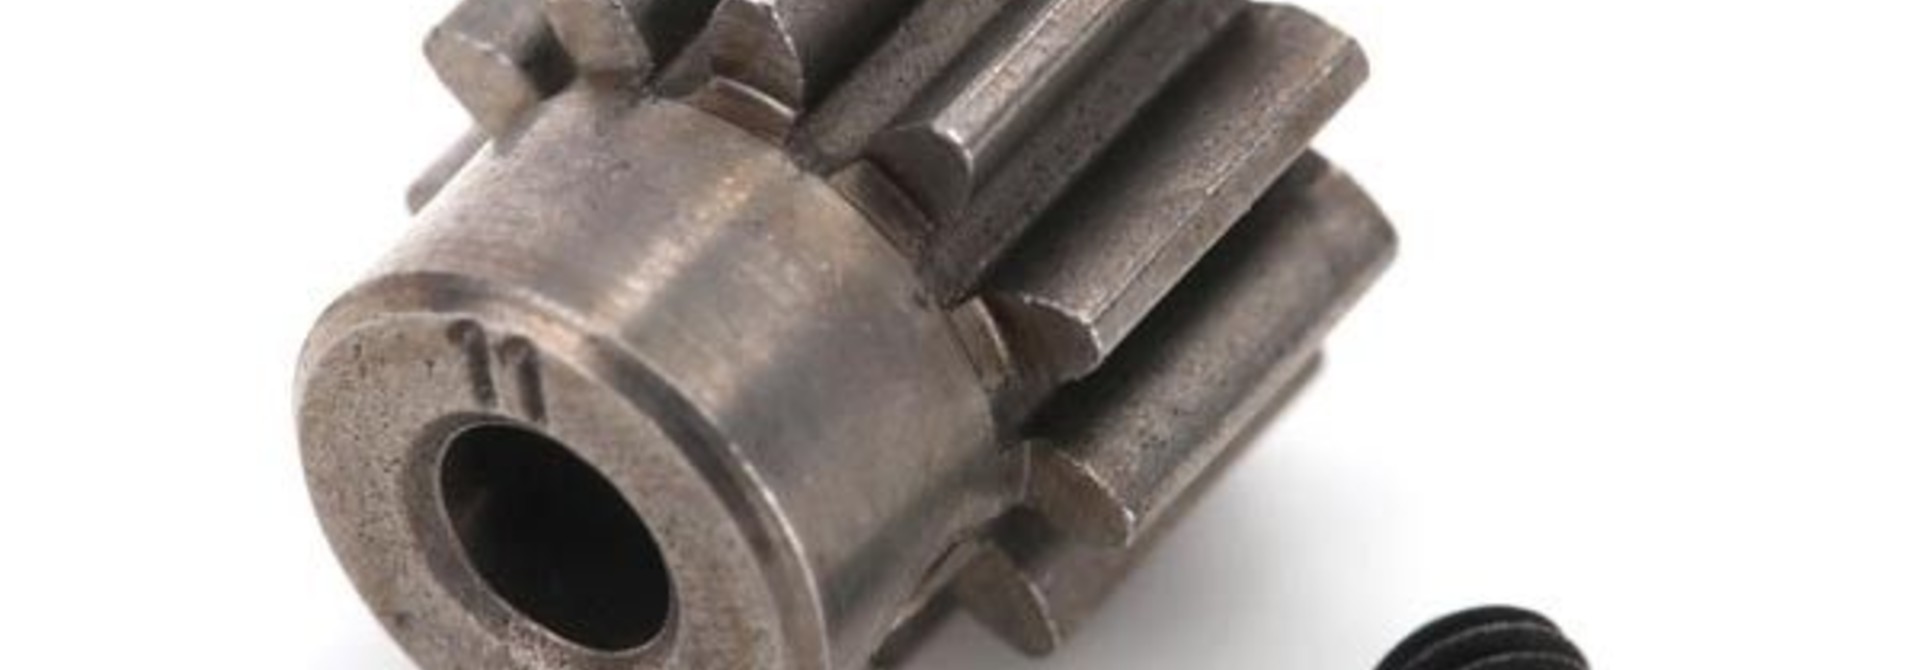 Gear, 11-T pinion (32-p) (mach. steel)/ set screw, TRX6747